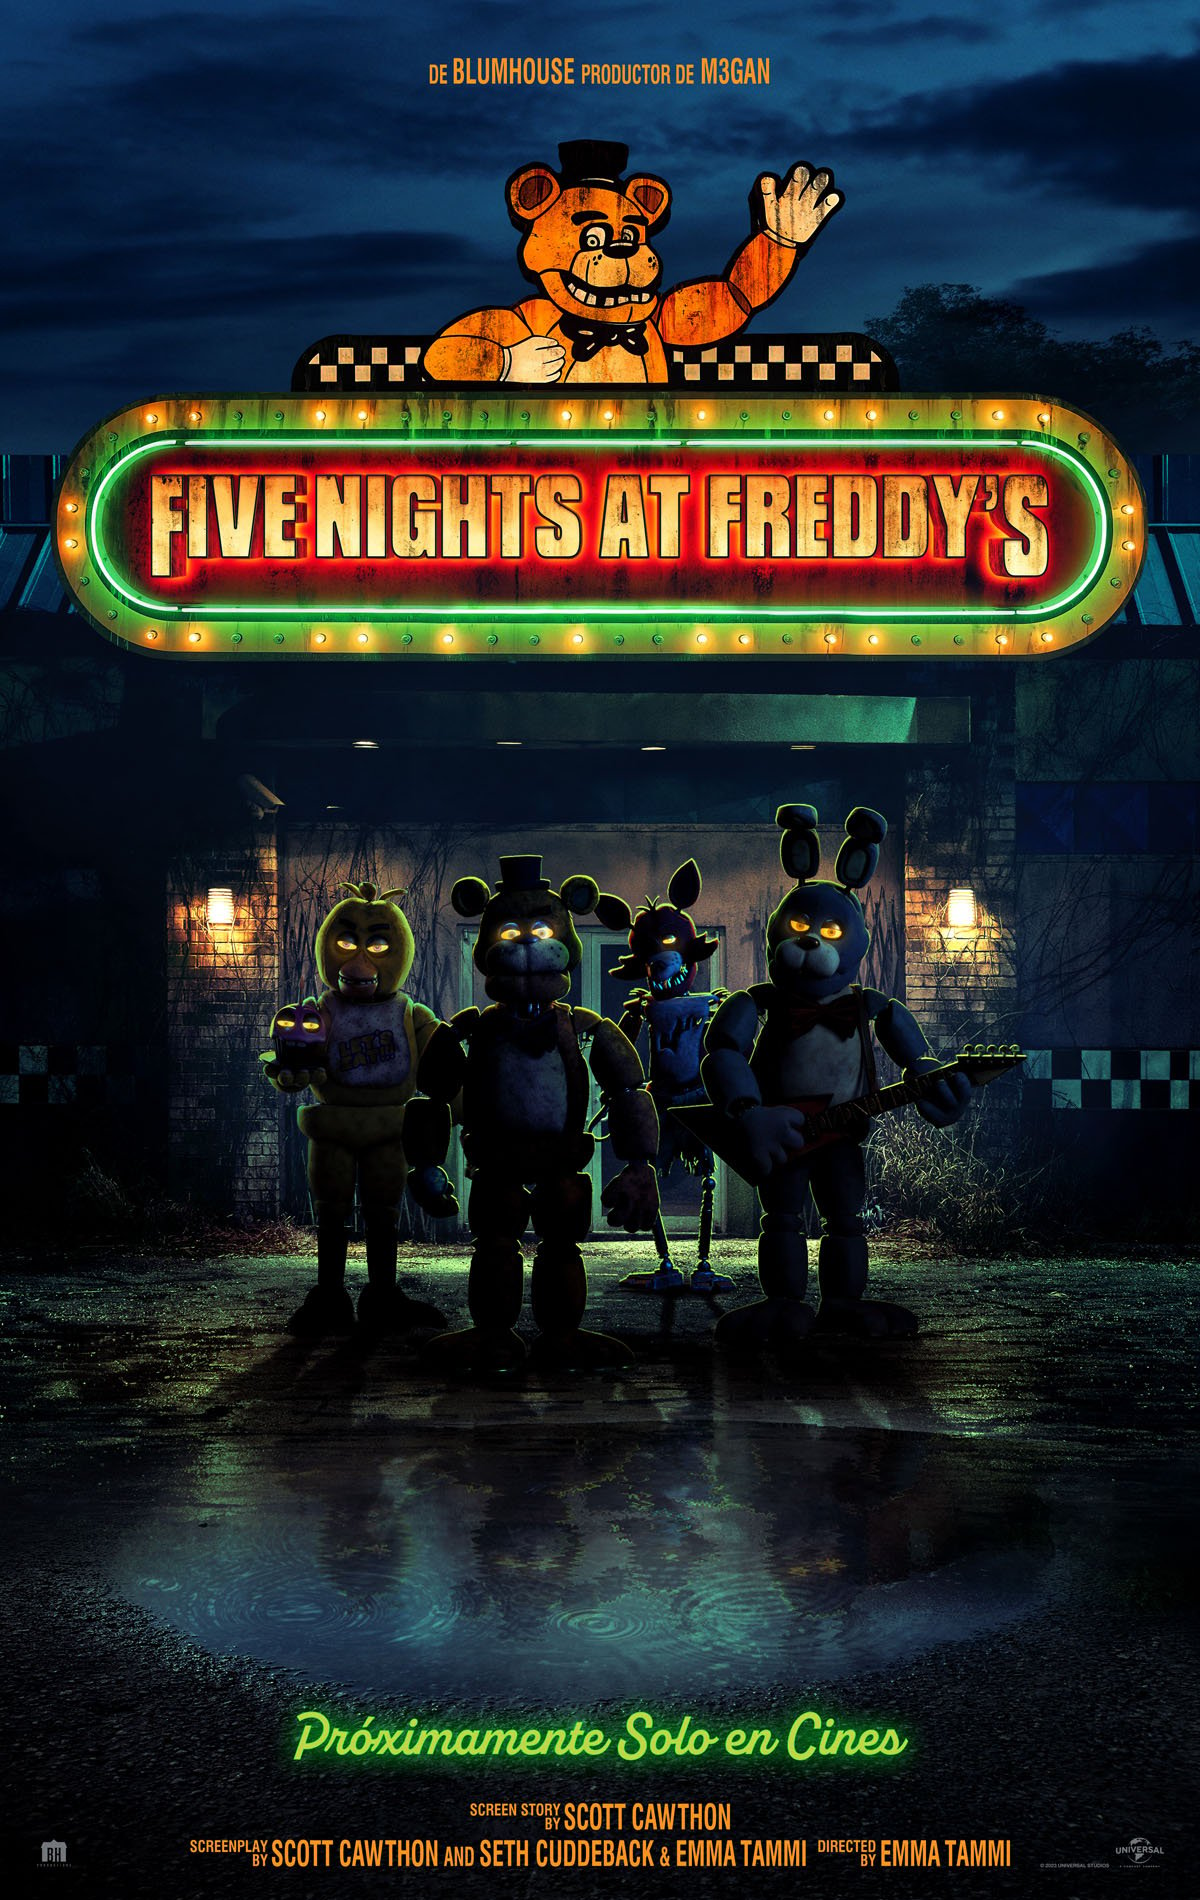 Cartel oficial del estreno de la película de Five Nights At Freddy's